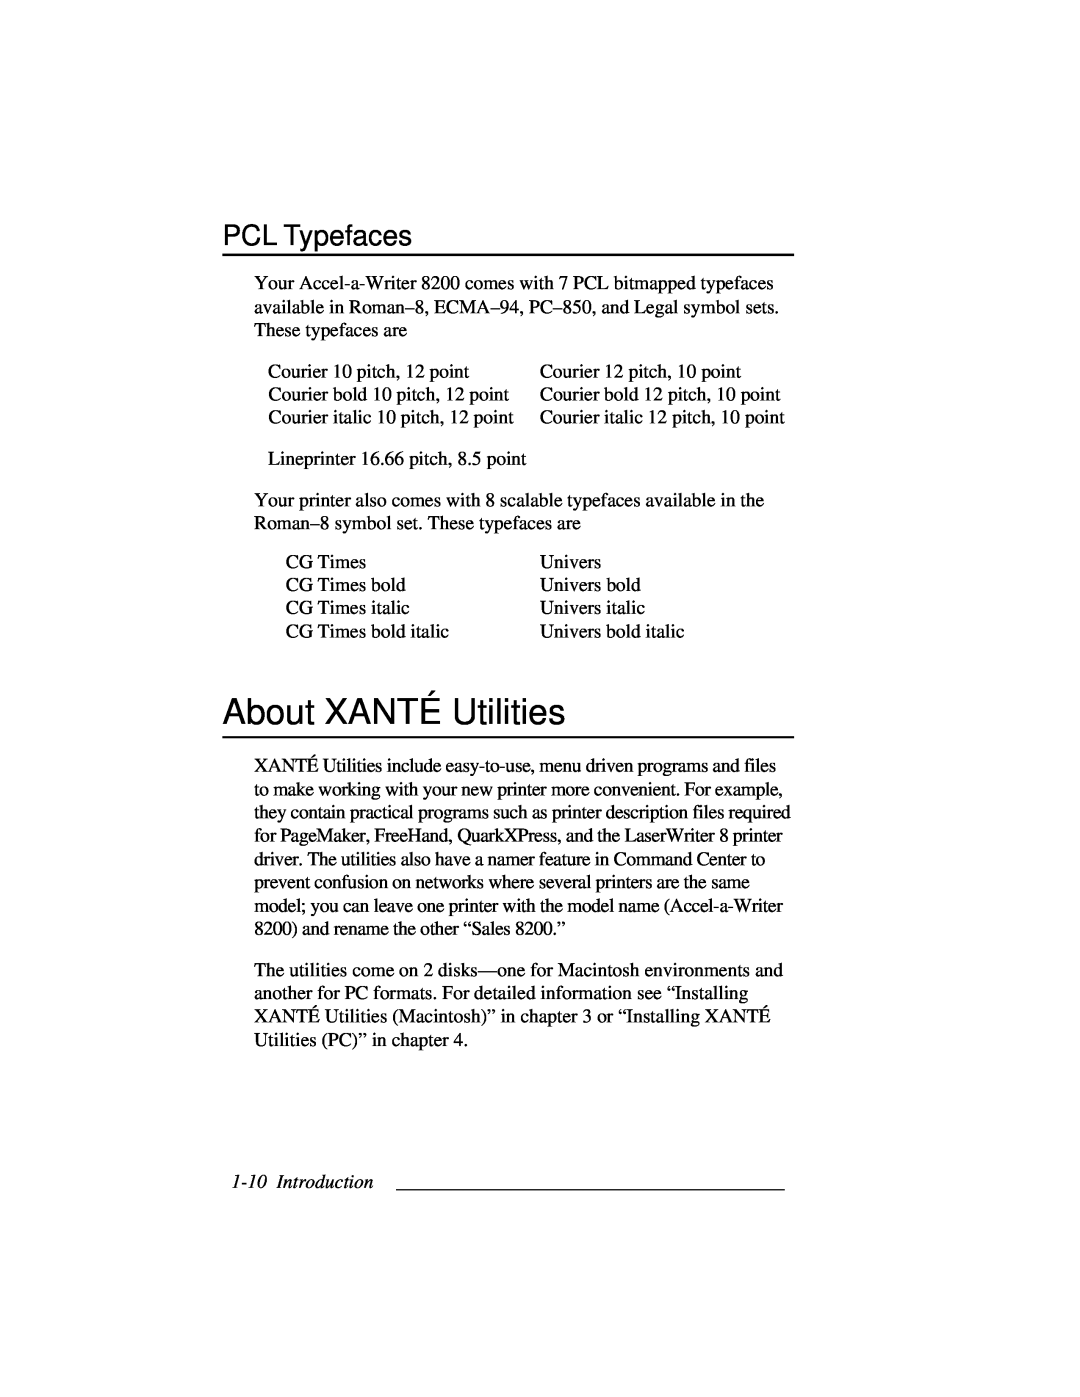 Accel 8200 manual About XANTÉ Utilities, PCL Typefaces 